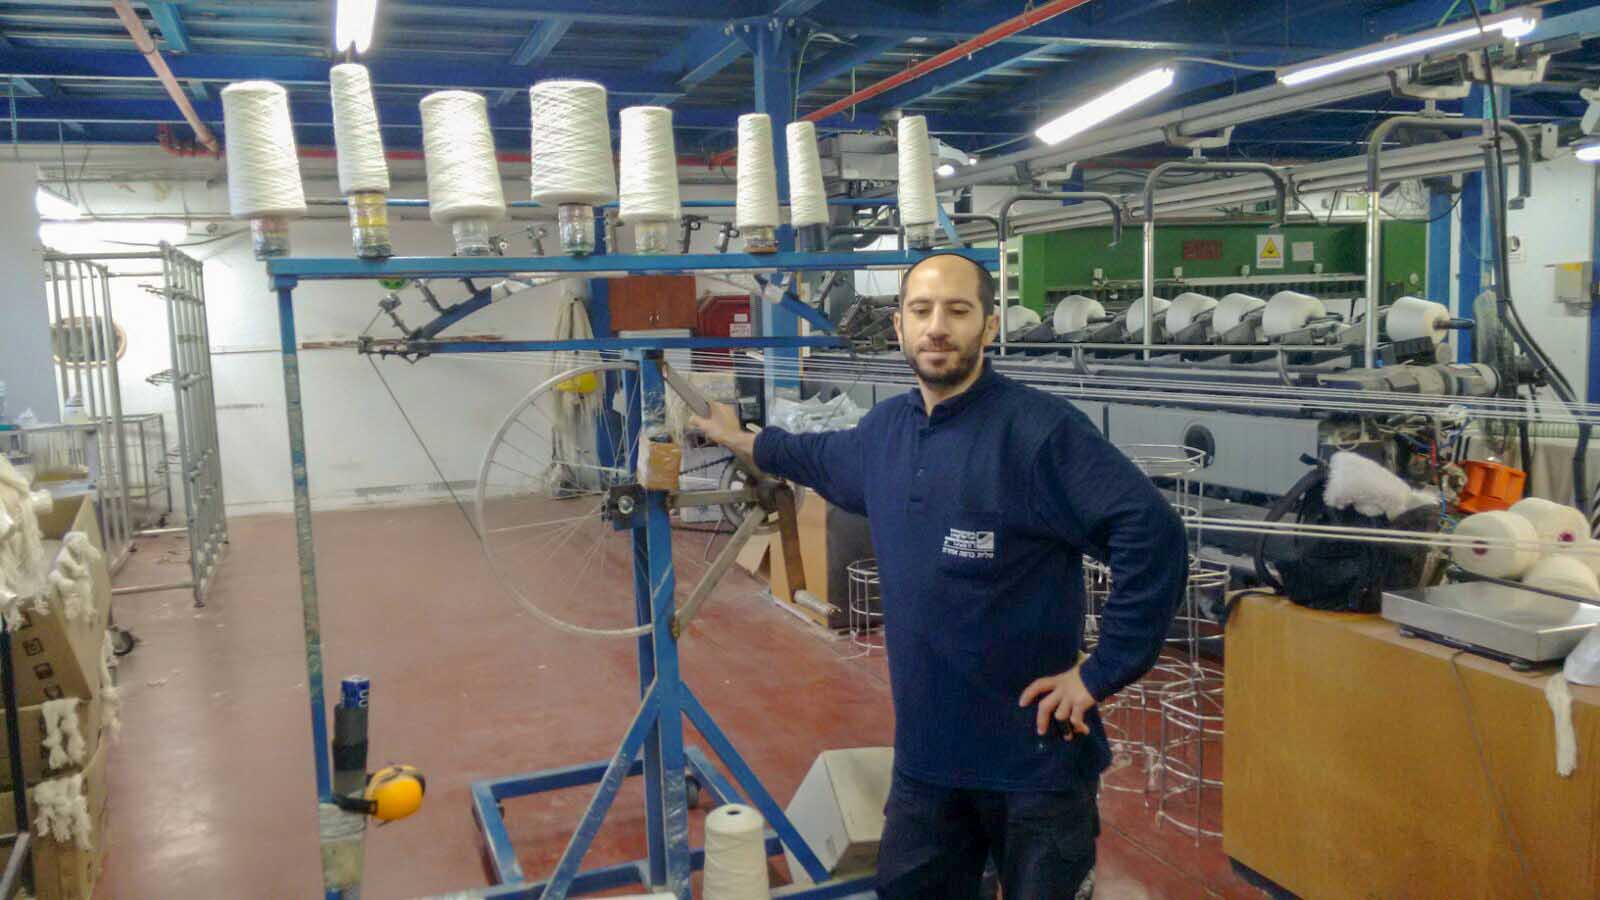 אדיר בן יוסף במפעל משכן התכלת להכנת טליתות בבאר שבע (צילום: יעל אלנתן)